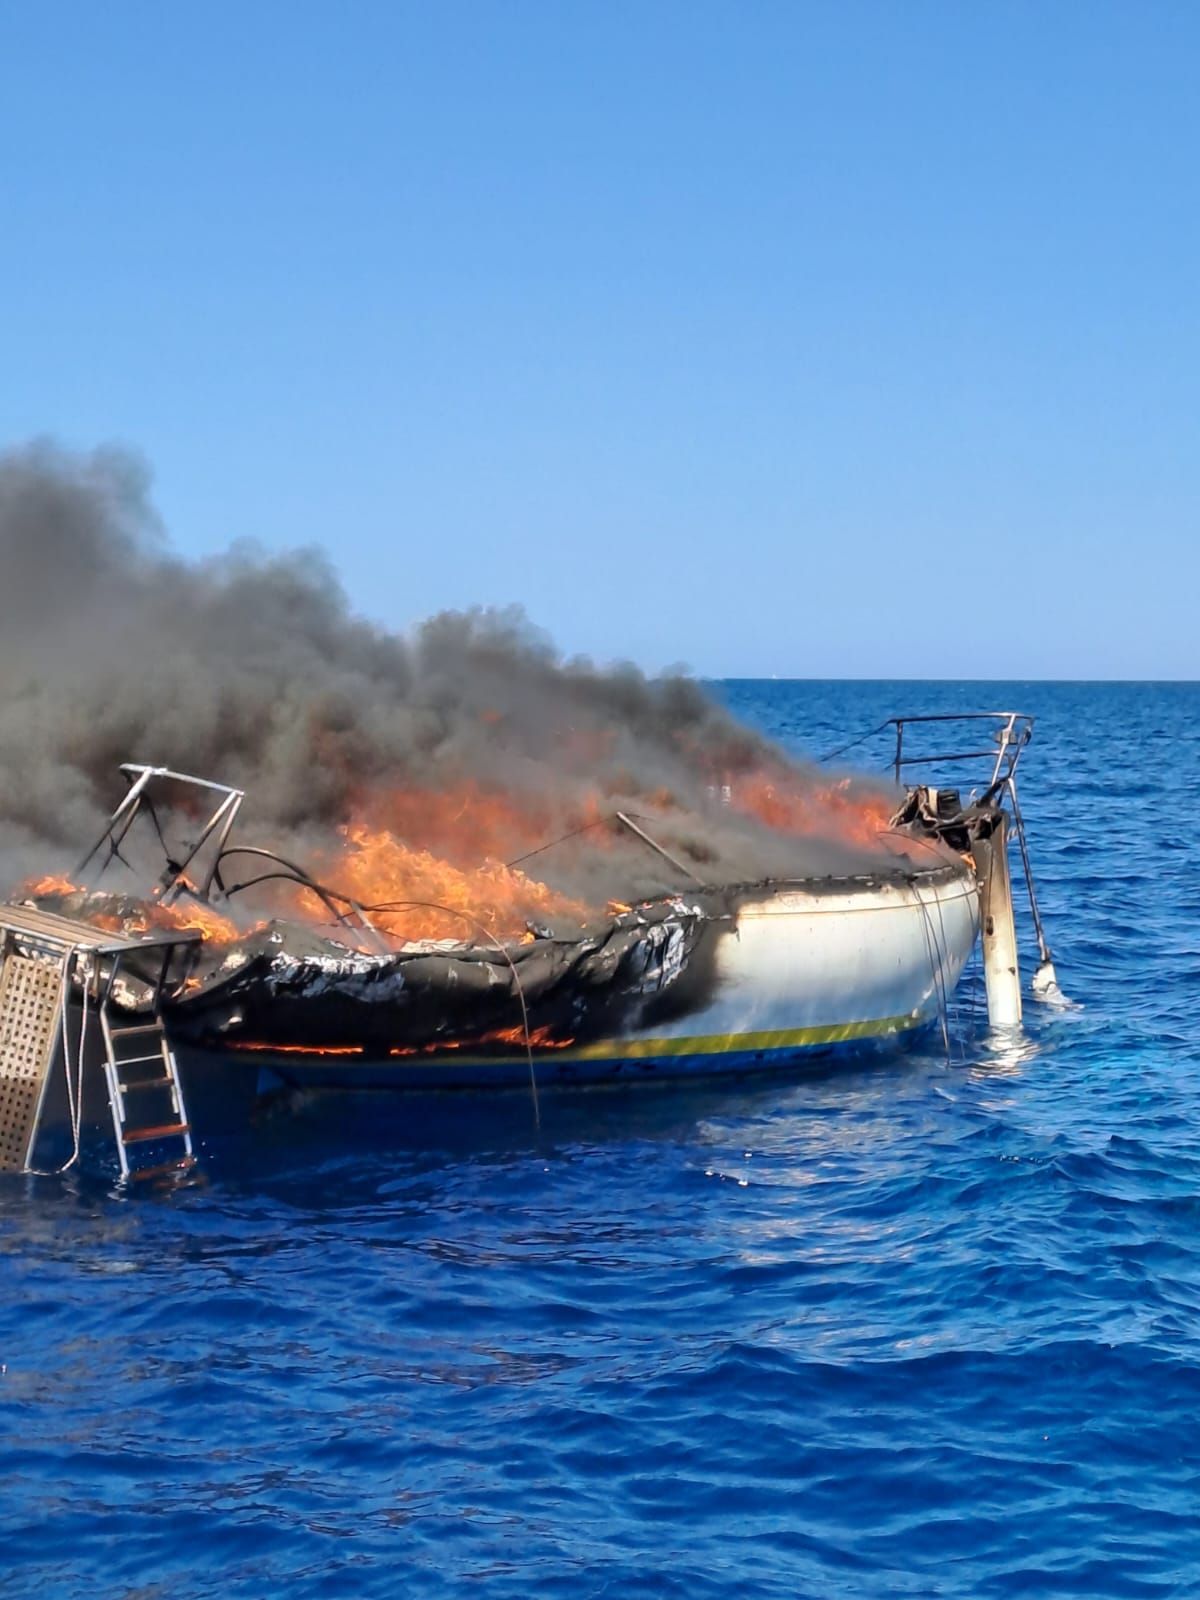 Barca a vela in fiamme e natante incagliato, a San Vito soccorse 7 persone. FOTO